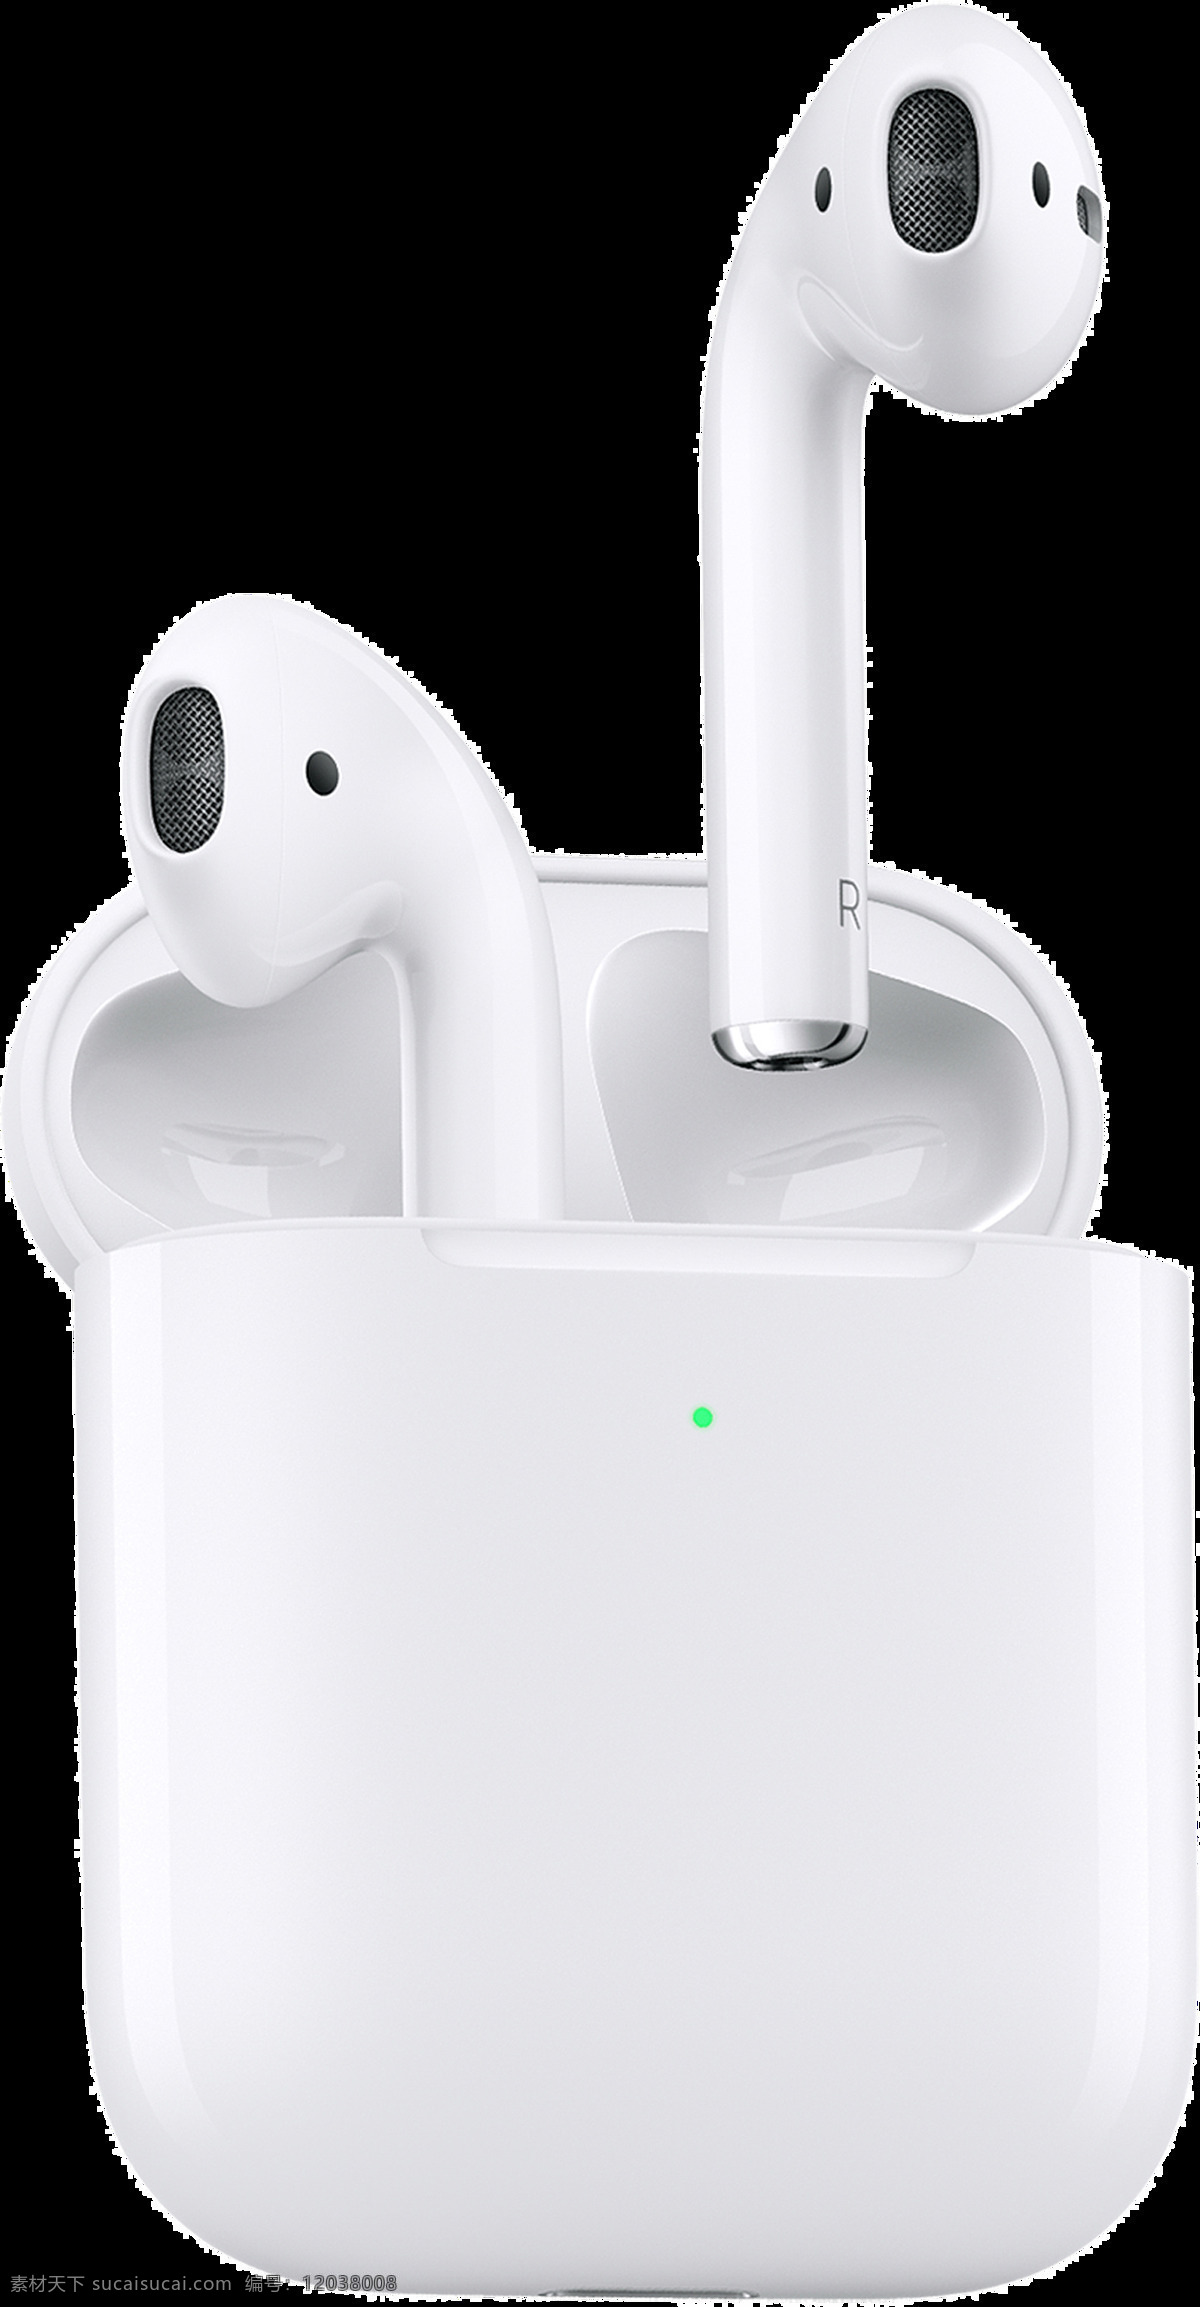 苹果 无线耳机 ipods 苹果耳机 appleipods 现代科技 数码产品